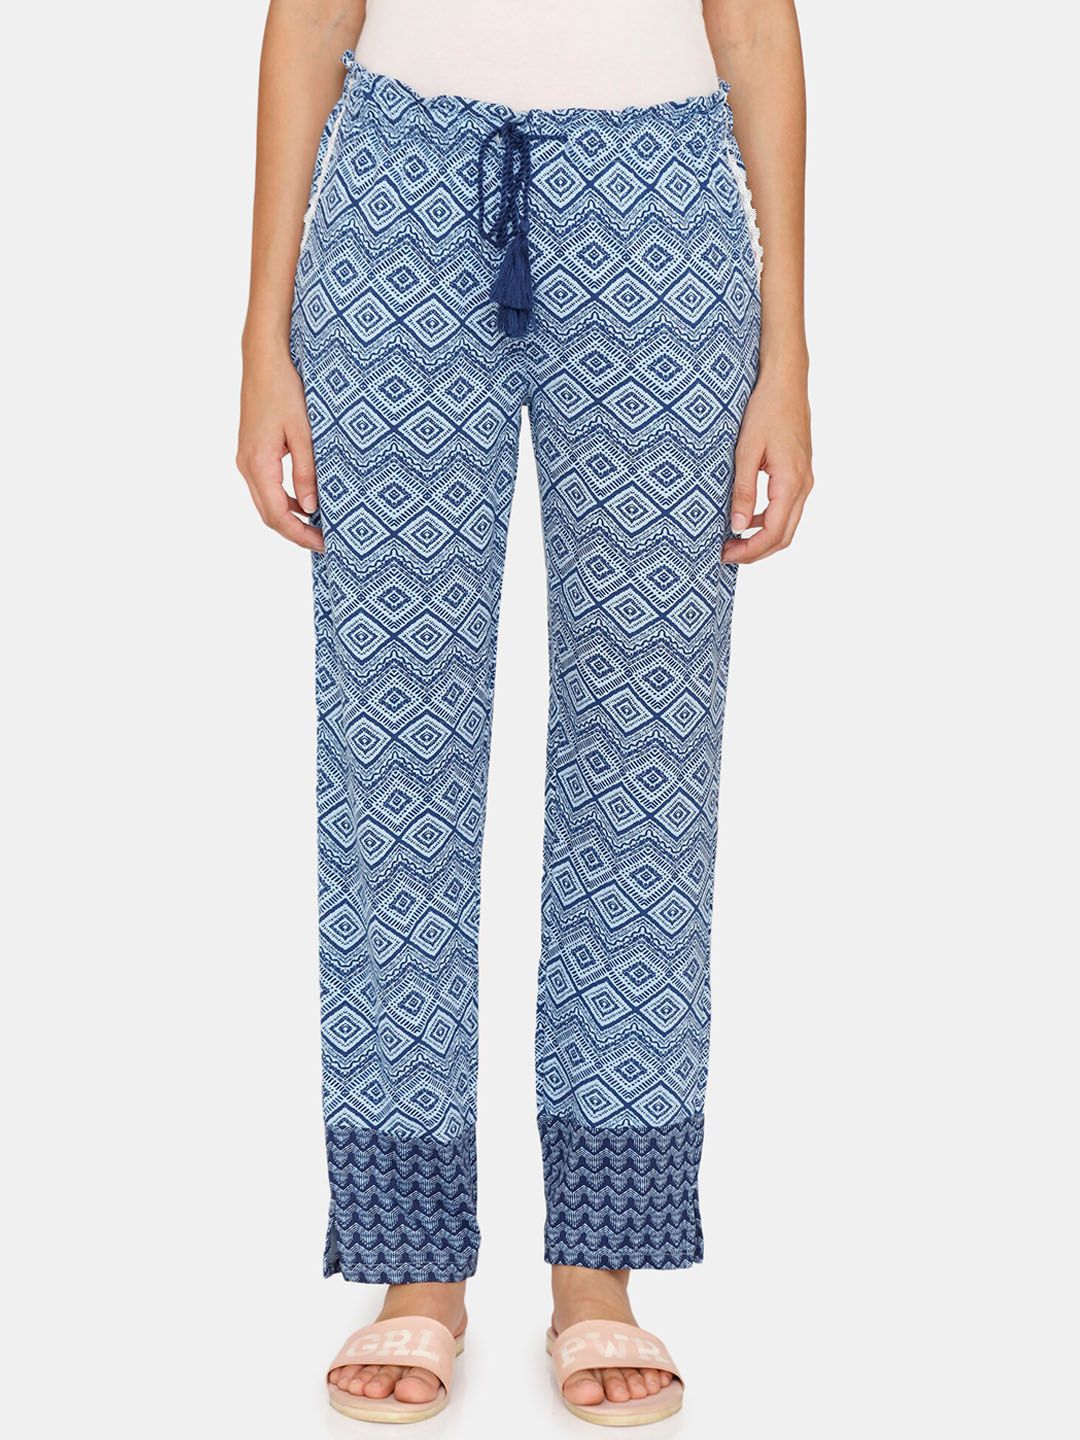 Zivame Women Blue Batik Printed Knitted Pyjamas Price in India